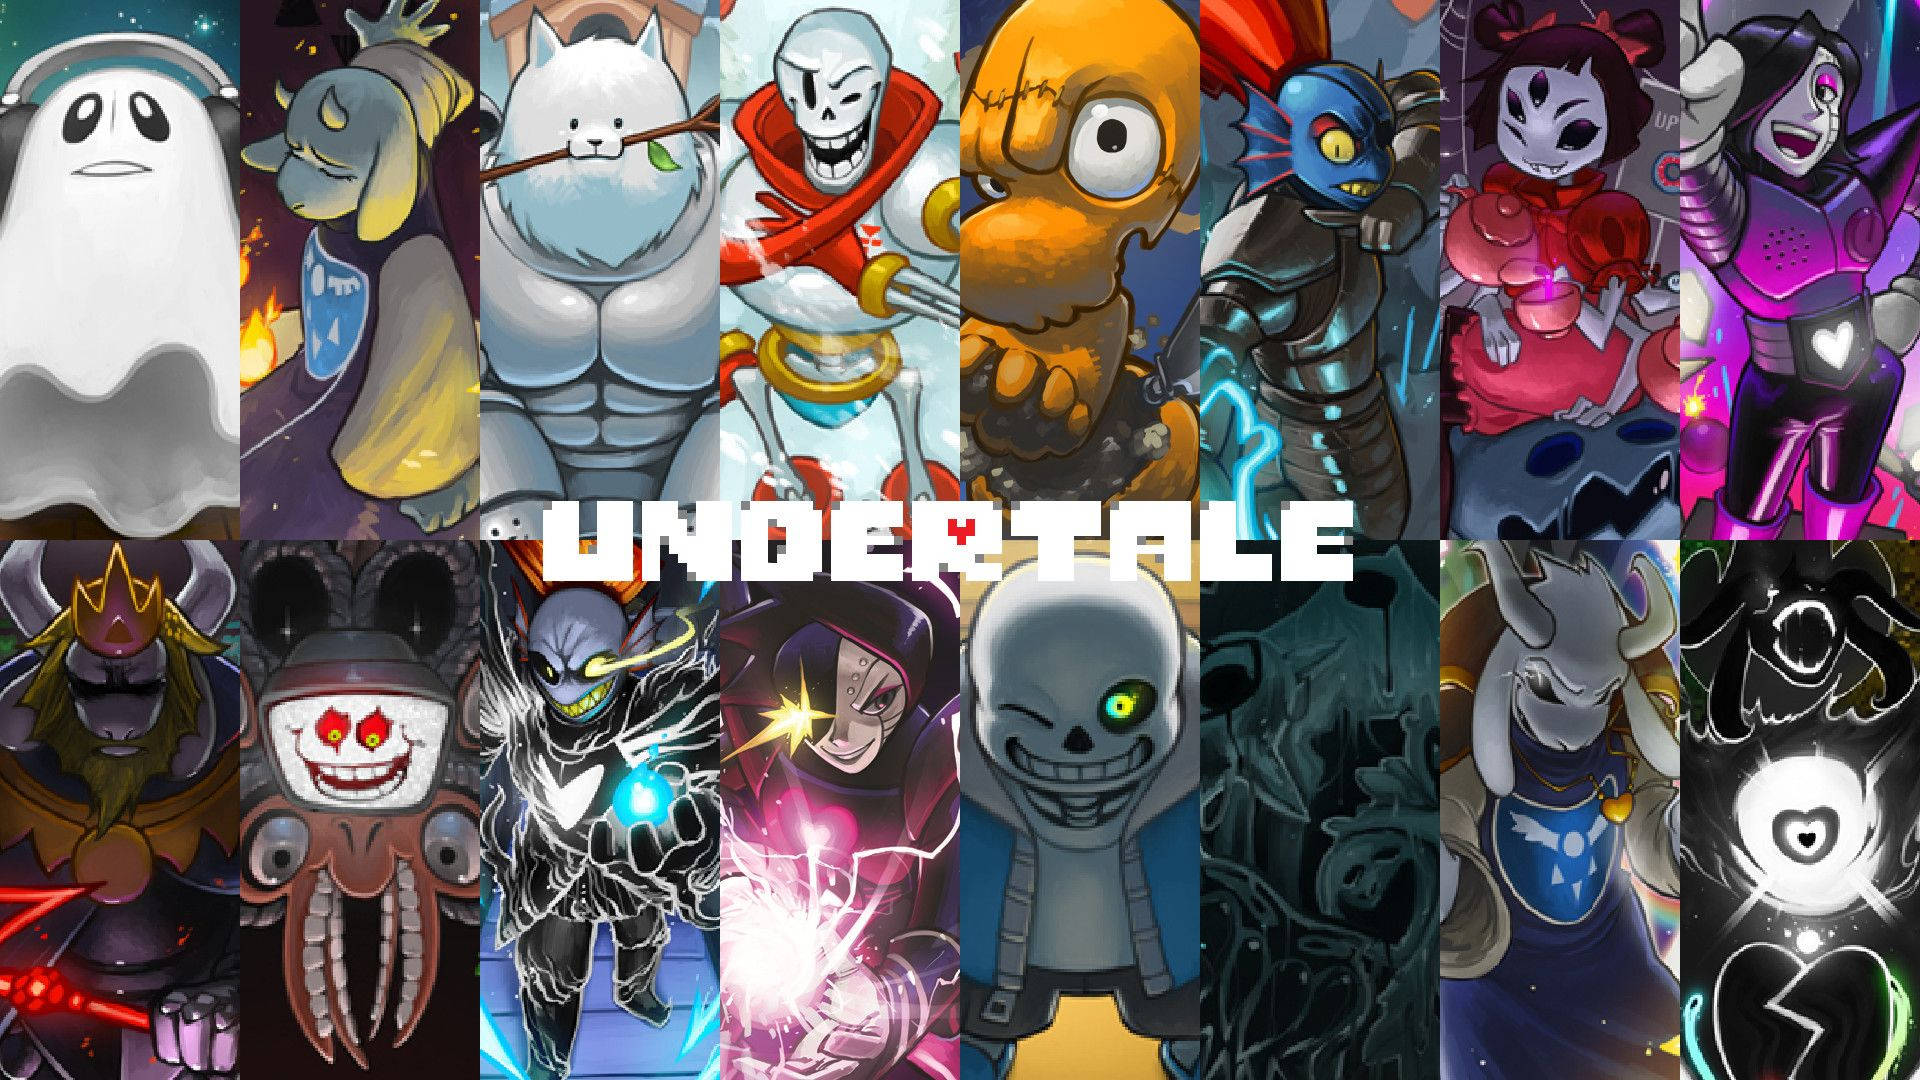 Bạn là fan của Undertale? Bạn đang tìm kiếm những hình nền độc đáo liên quan đến trò chơi này? Hãy xem các hình nền tuyệt đẹp với độ phân giải cao trong bài đăng này. Bạn có thể tải xuống và sử dụng chúng hoàn toàn miễn phí. Hãy khám phá thế giới của Undertale và thưởng thức những hình nền đẹp mắt.